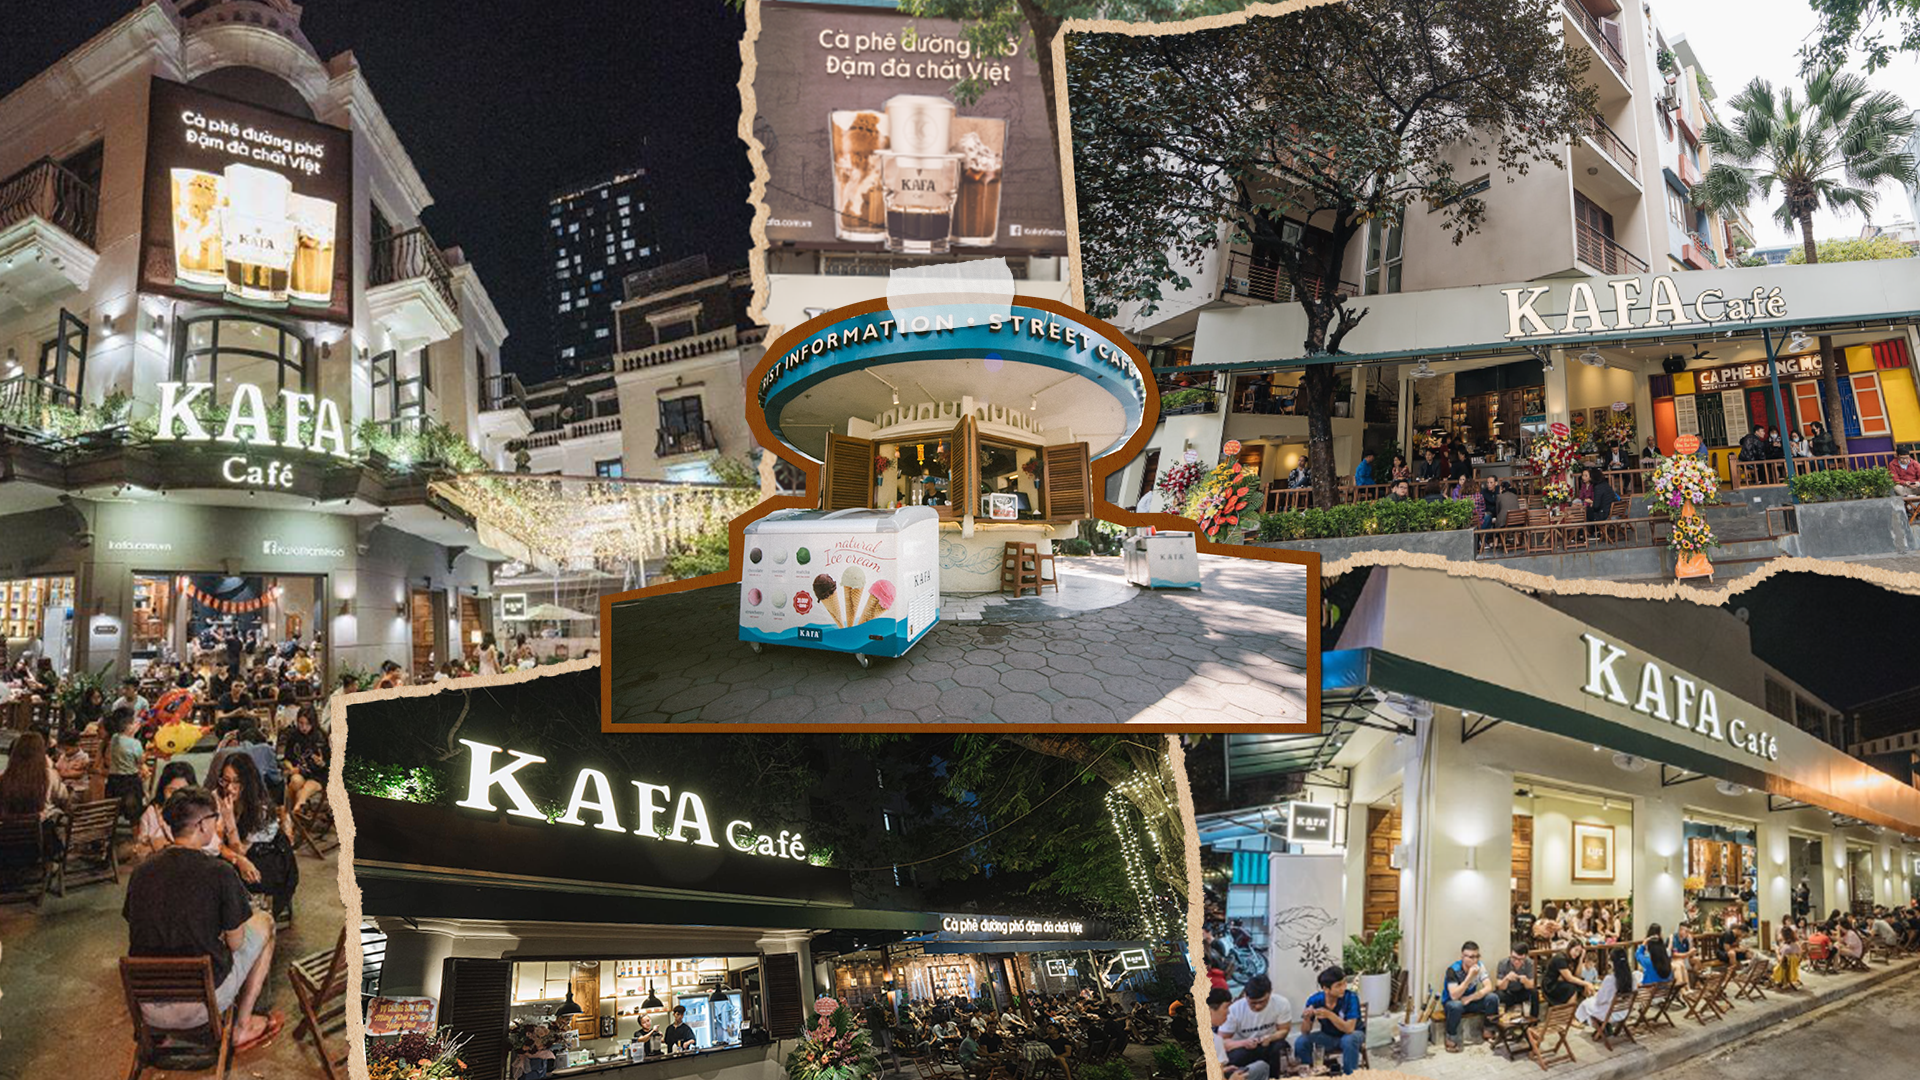 KAFA Cafe